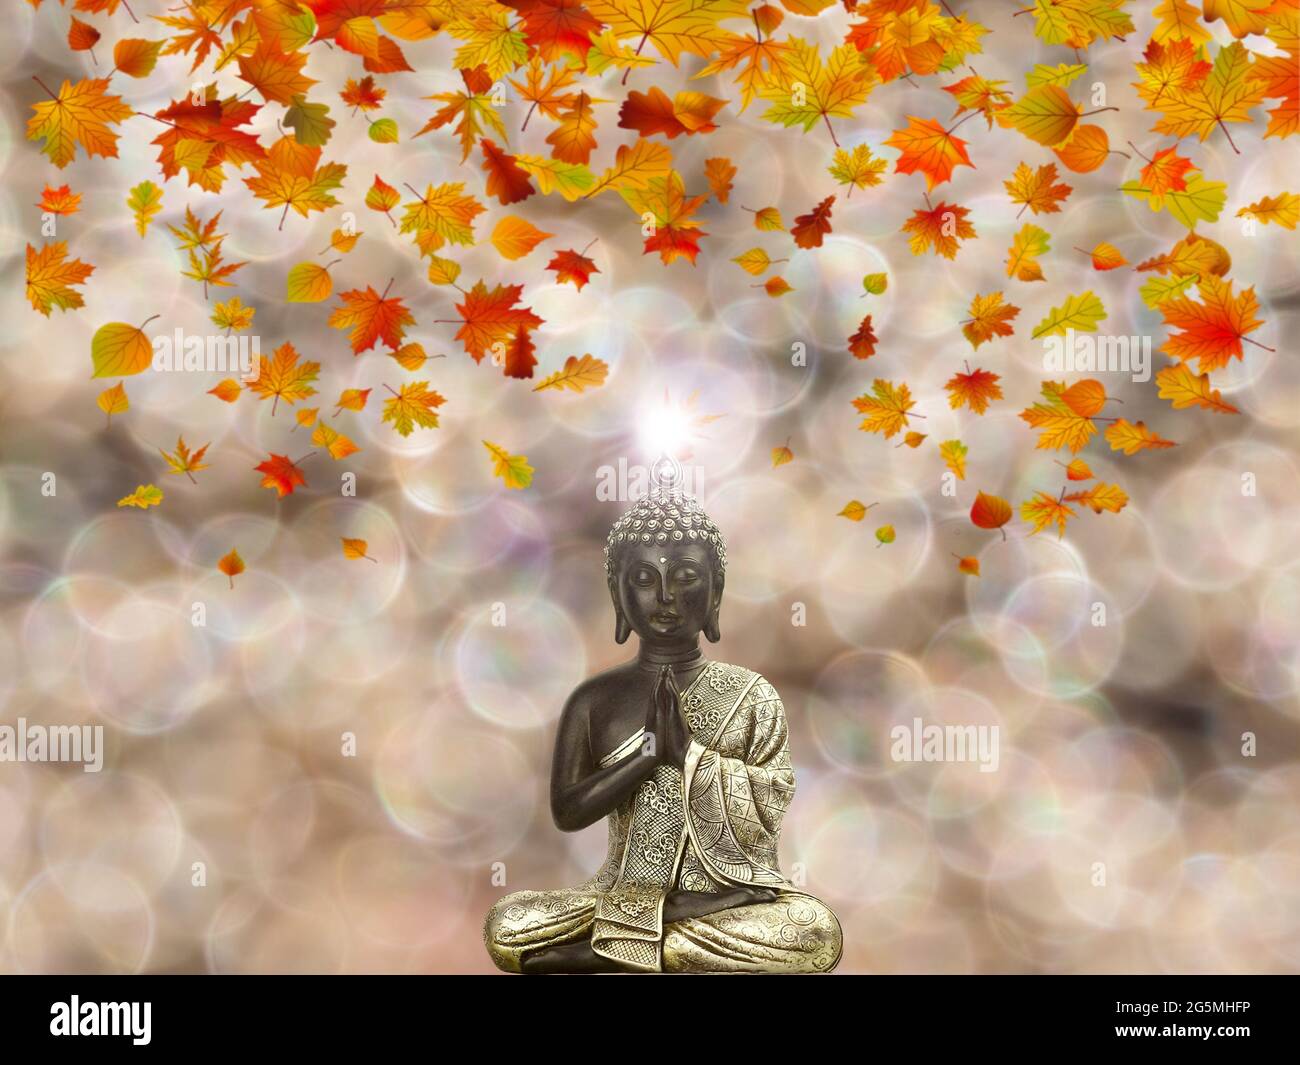 Spirituality Wallpaper Images  Free Download on Freepik